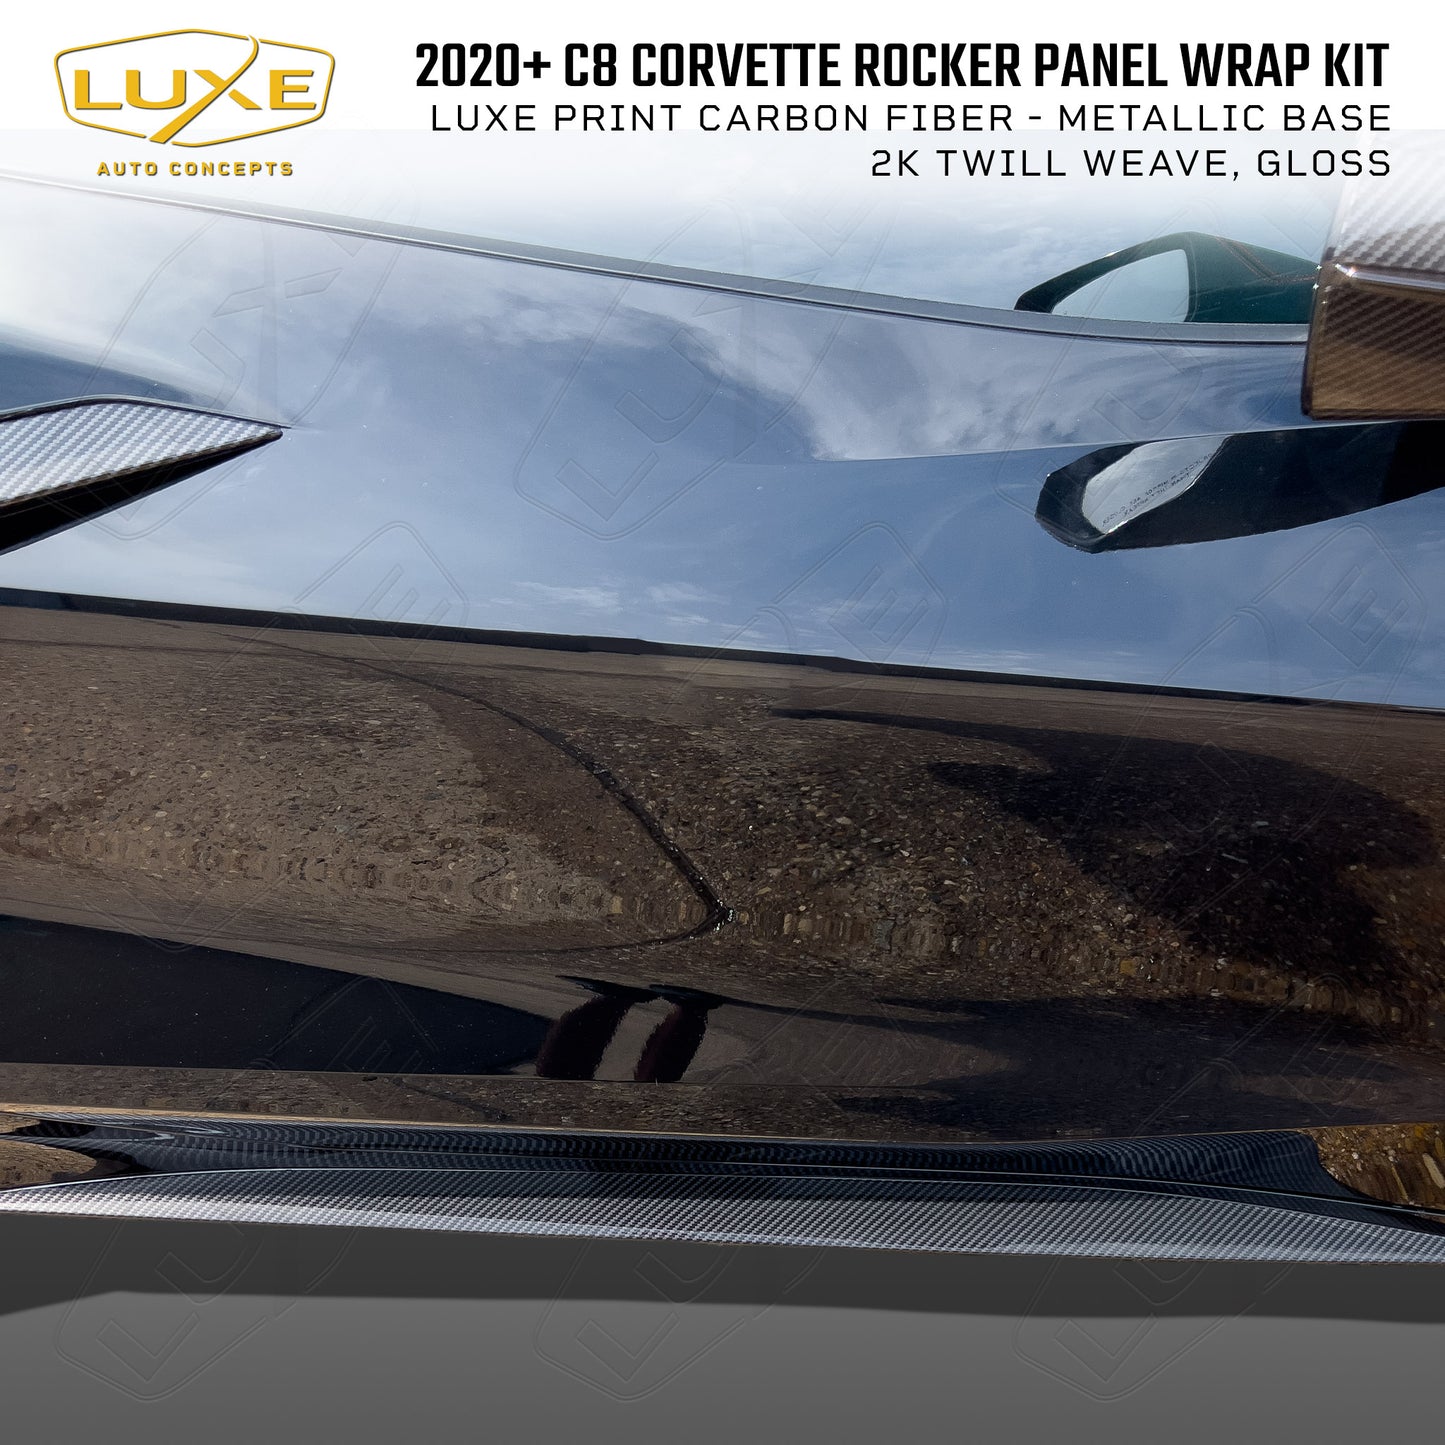 2020+ C8 Corvette Rocker Panel Wrap Kit